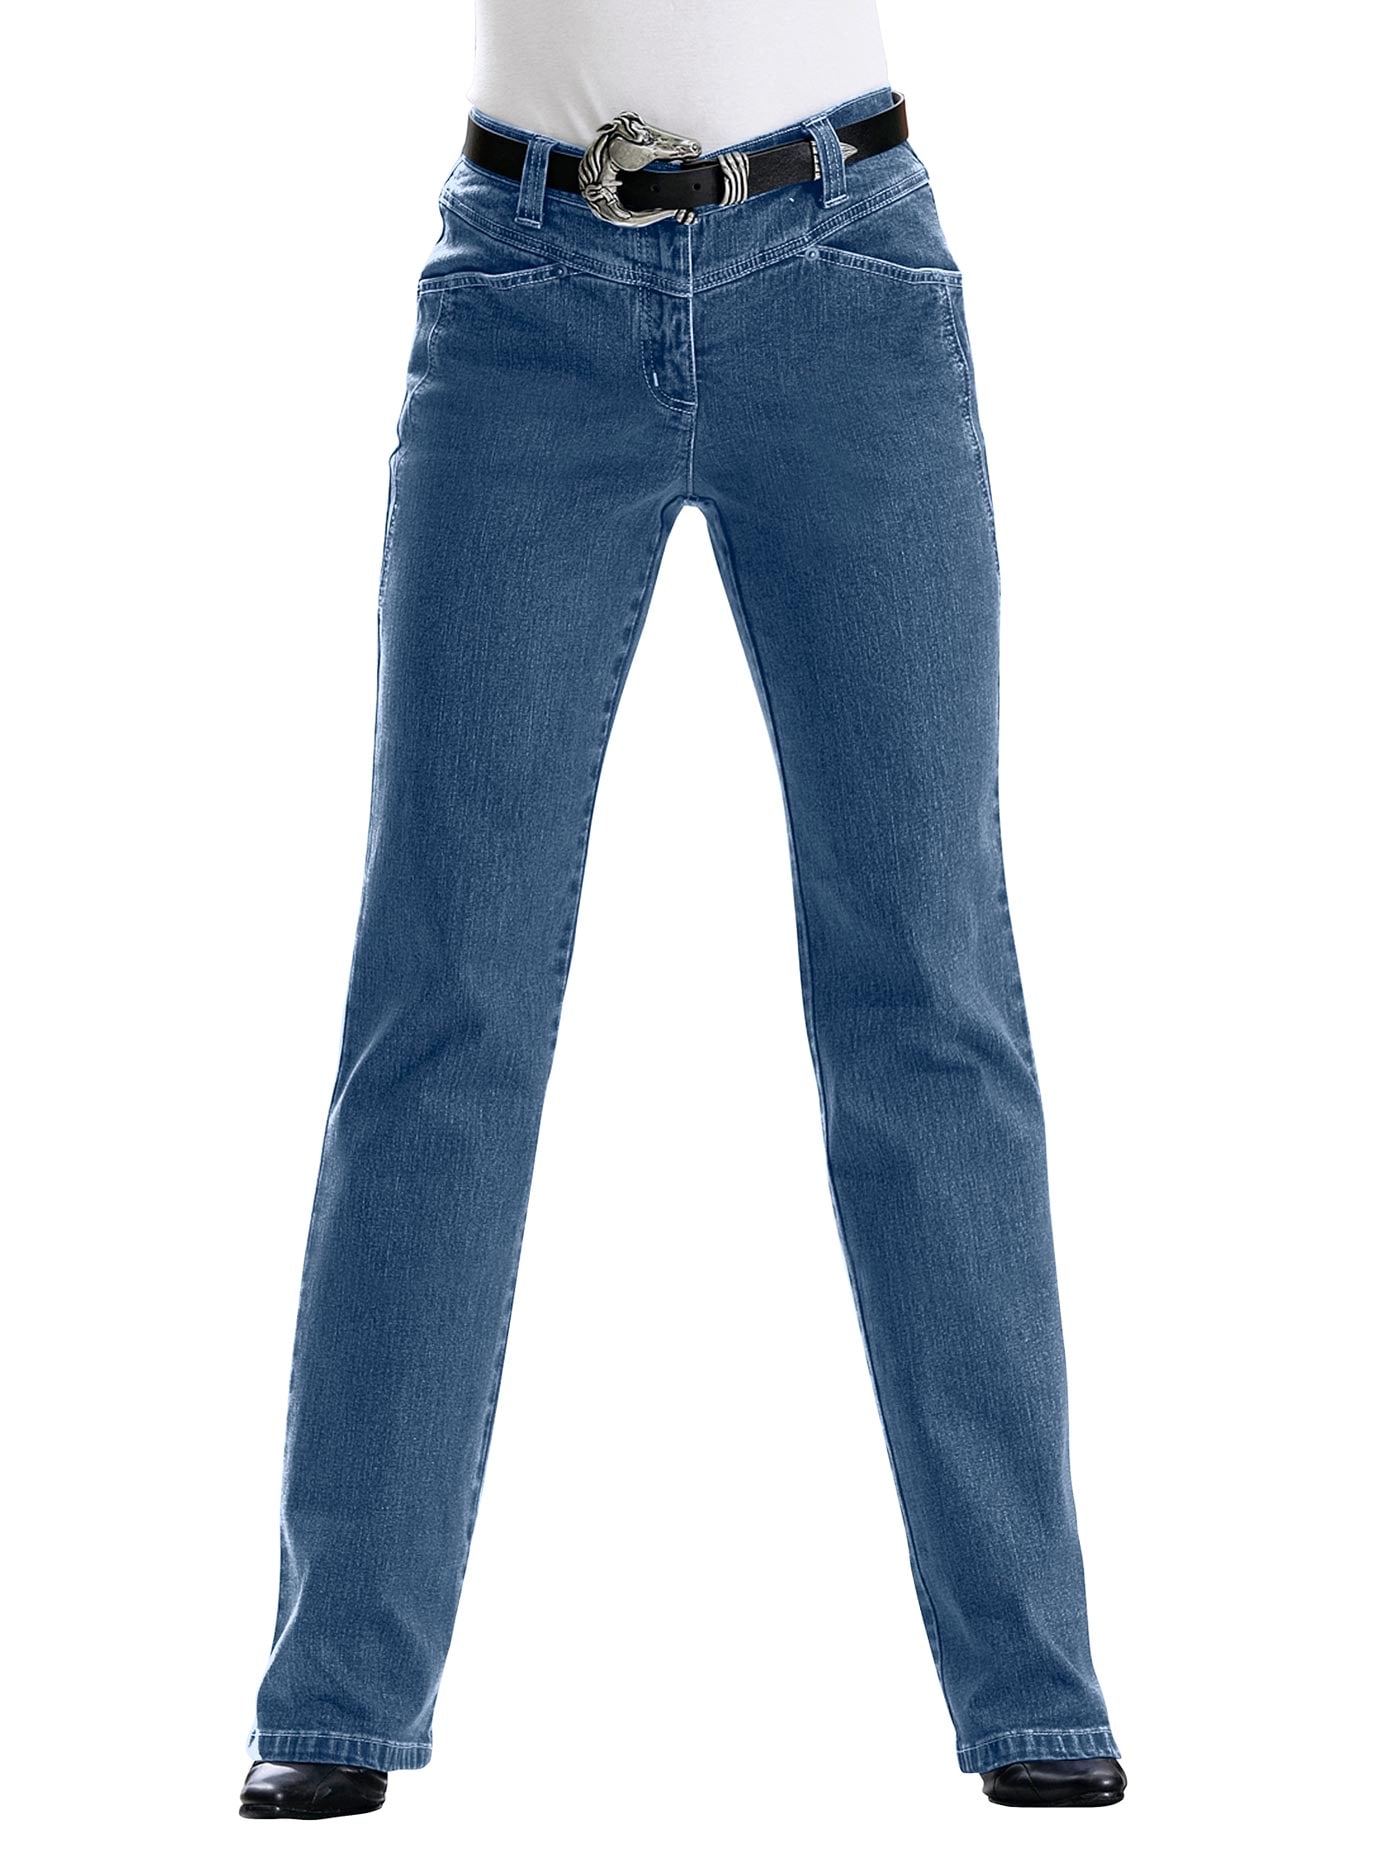 Inspirationen Bequeme Jeans, (1 tlg.) von Inspirationen